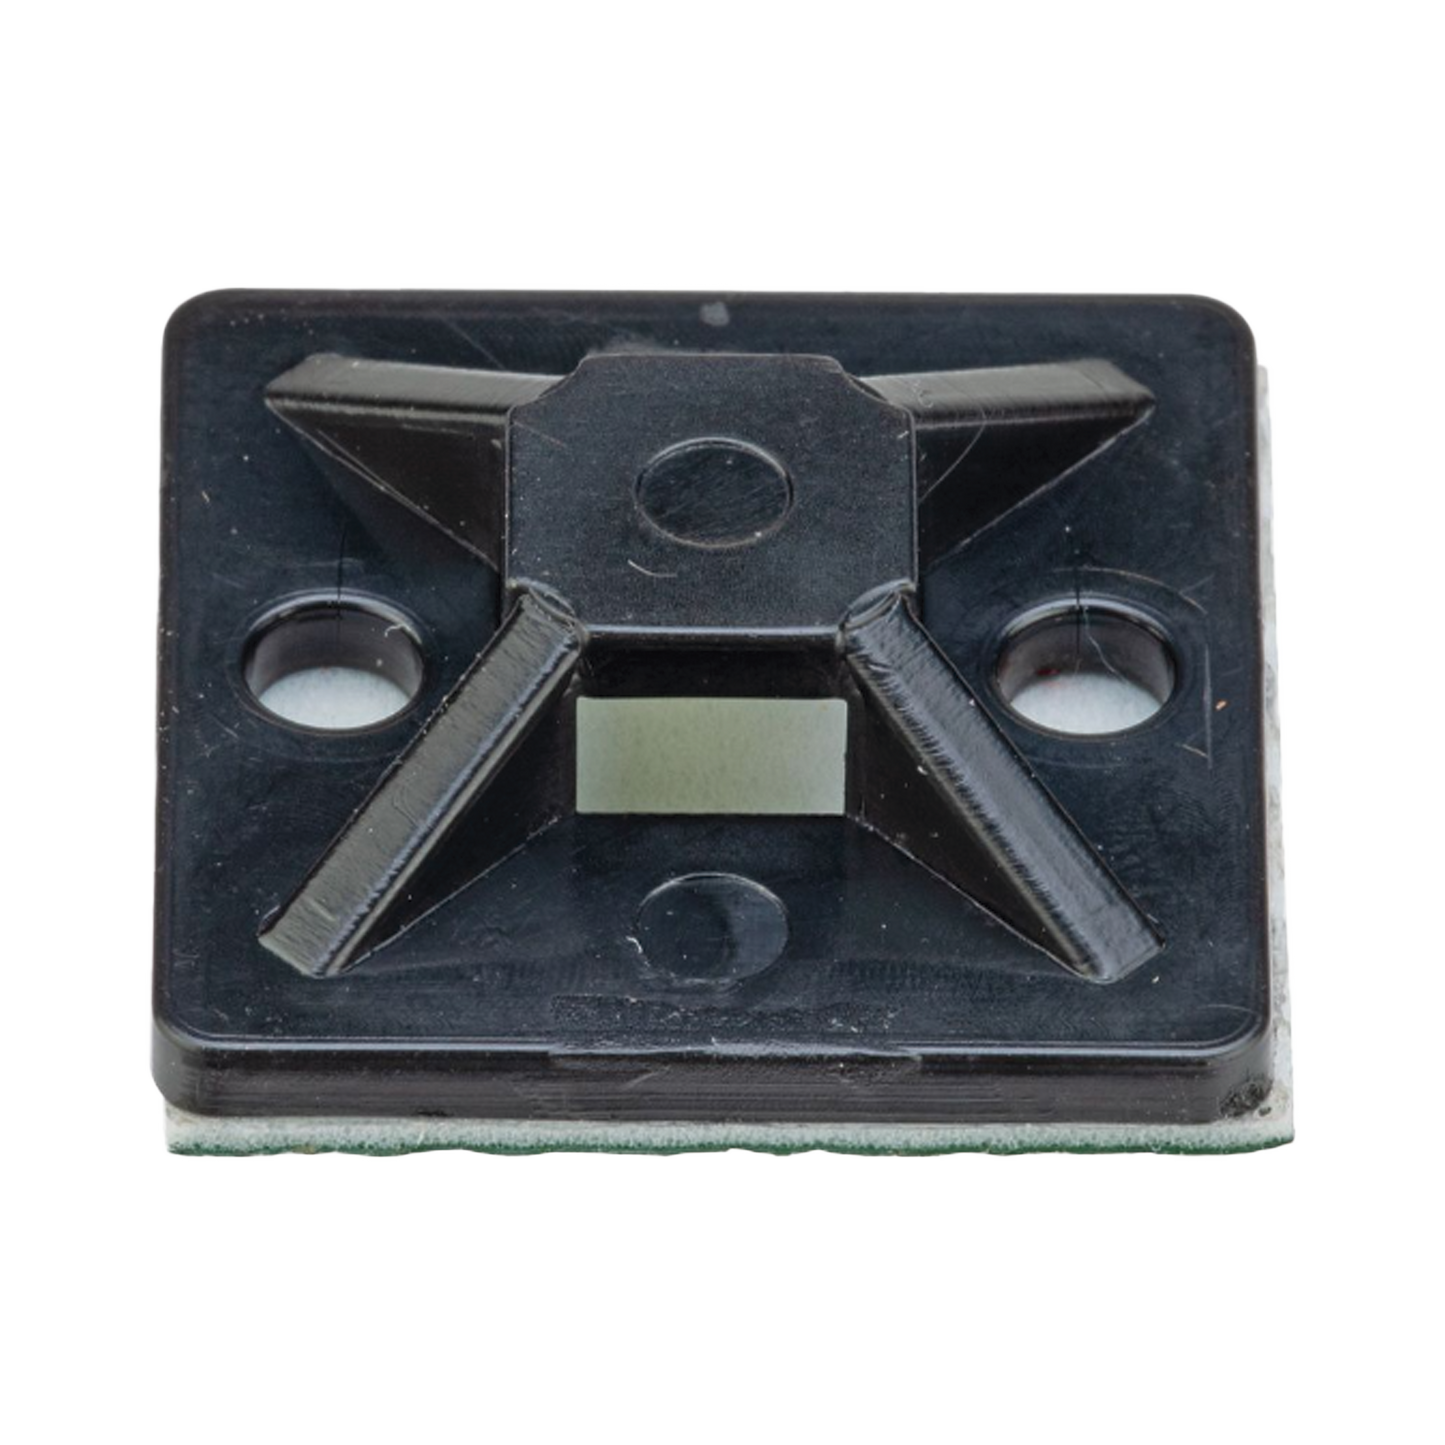 Montaje-Sujetador Adhesivo de 4 Vías de 1" x 1" x 1/4", Color Negro,  Nylon 6.6 Retardante de Llamas V-2, Paquete de 100pz